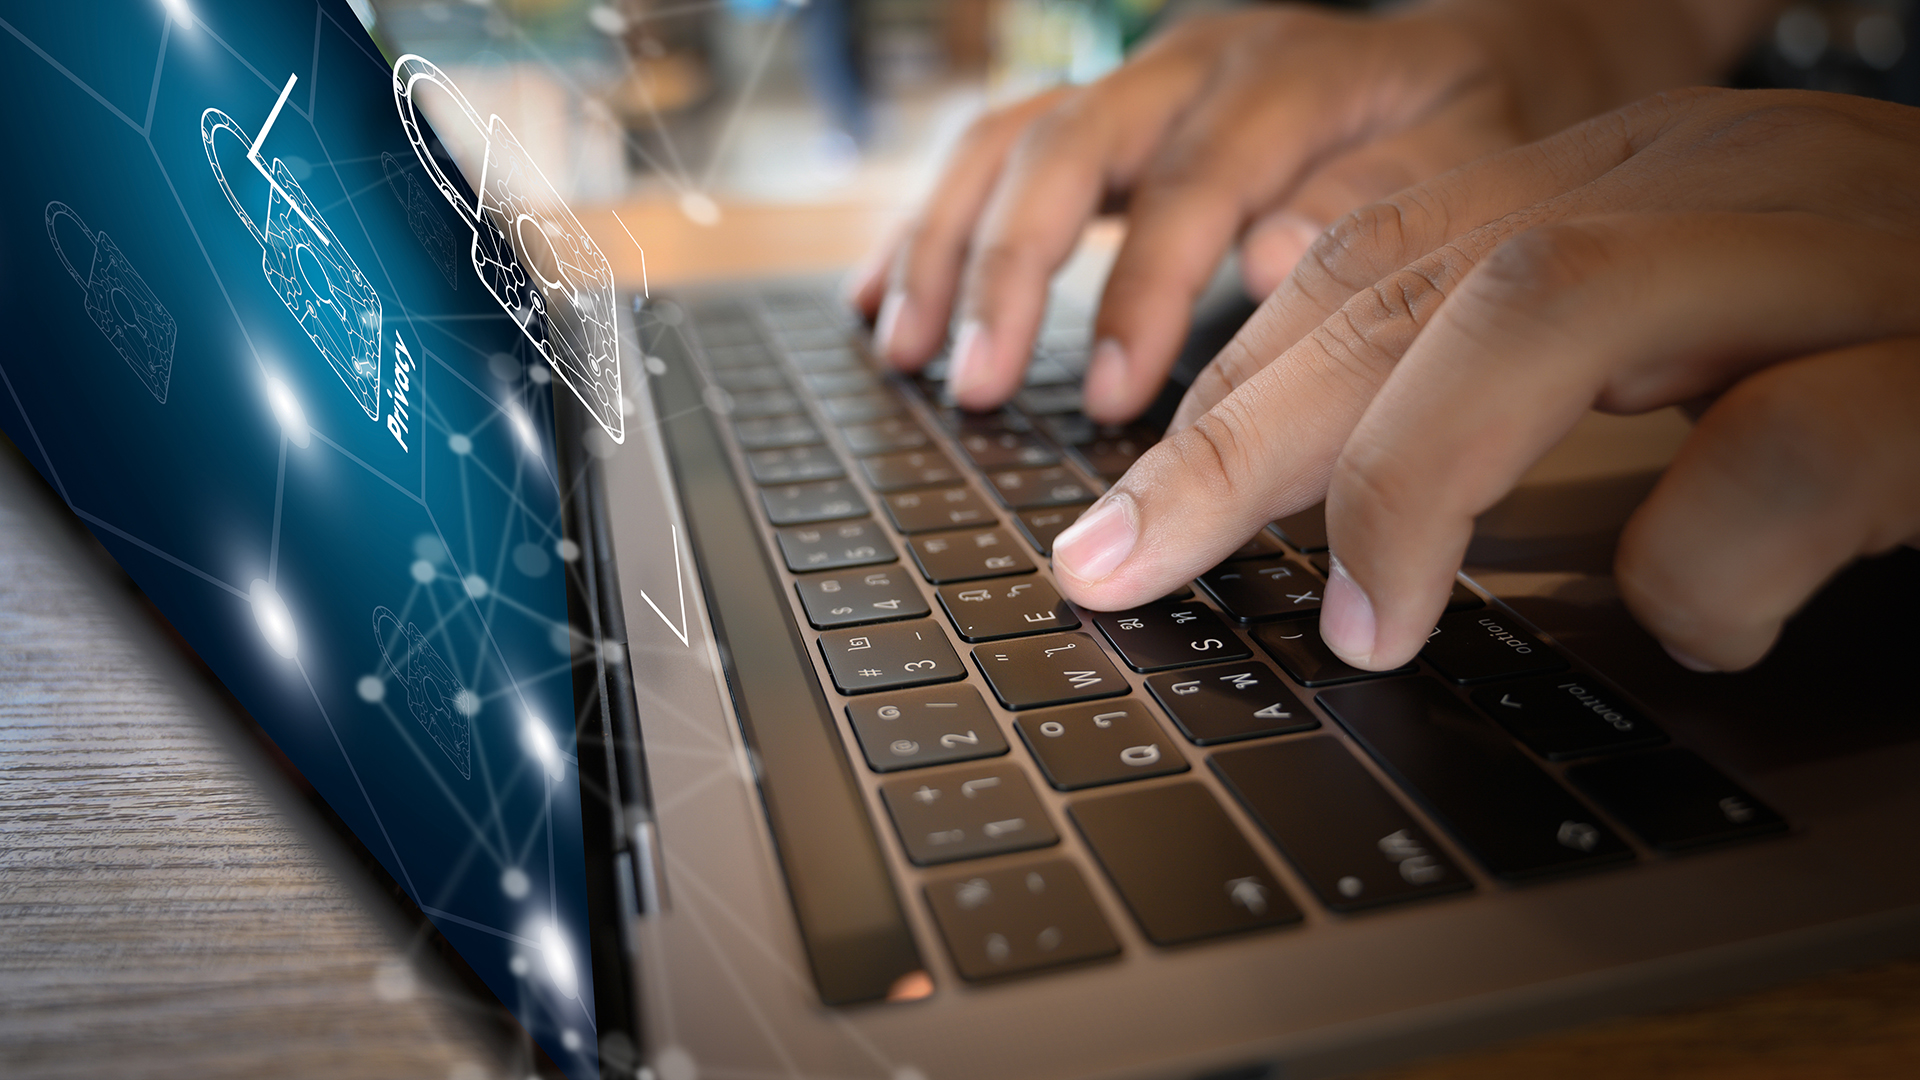 La ciberseguridad es transversal a todas las empresas (Crédito: Shutterstock)